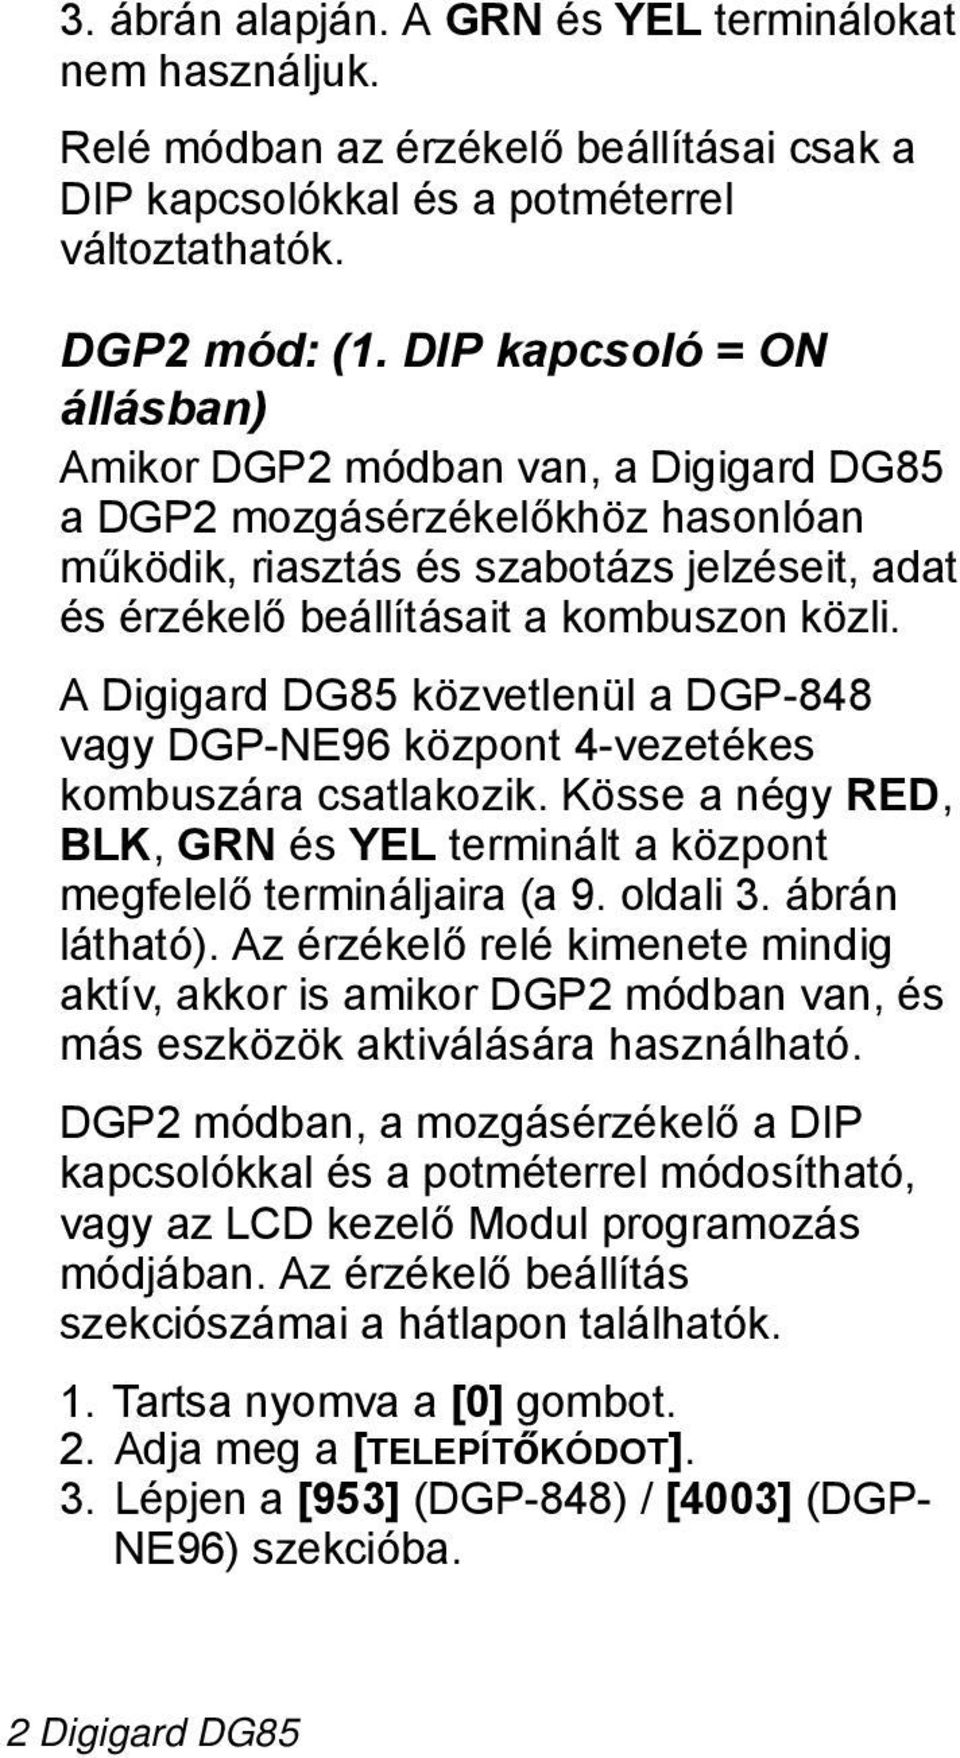 Digigard DG85 közvetlenül a DGP-848 vagy DGP-NE96 központ 4-vezetékes kombuszára csatlakozik. Kösse a négy RED, LK, GRN és YEL terminált a központ megfelelő termináljaira (a 9. oldali 3.